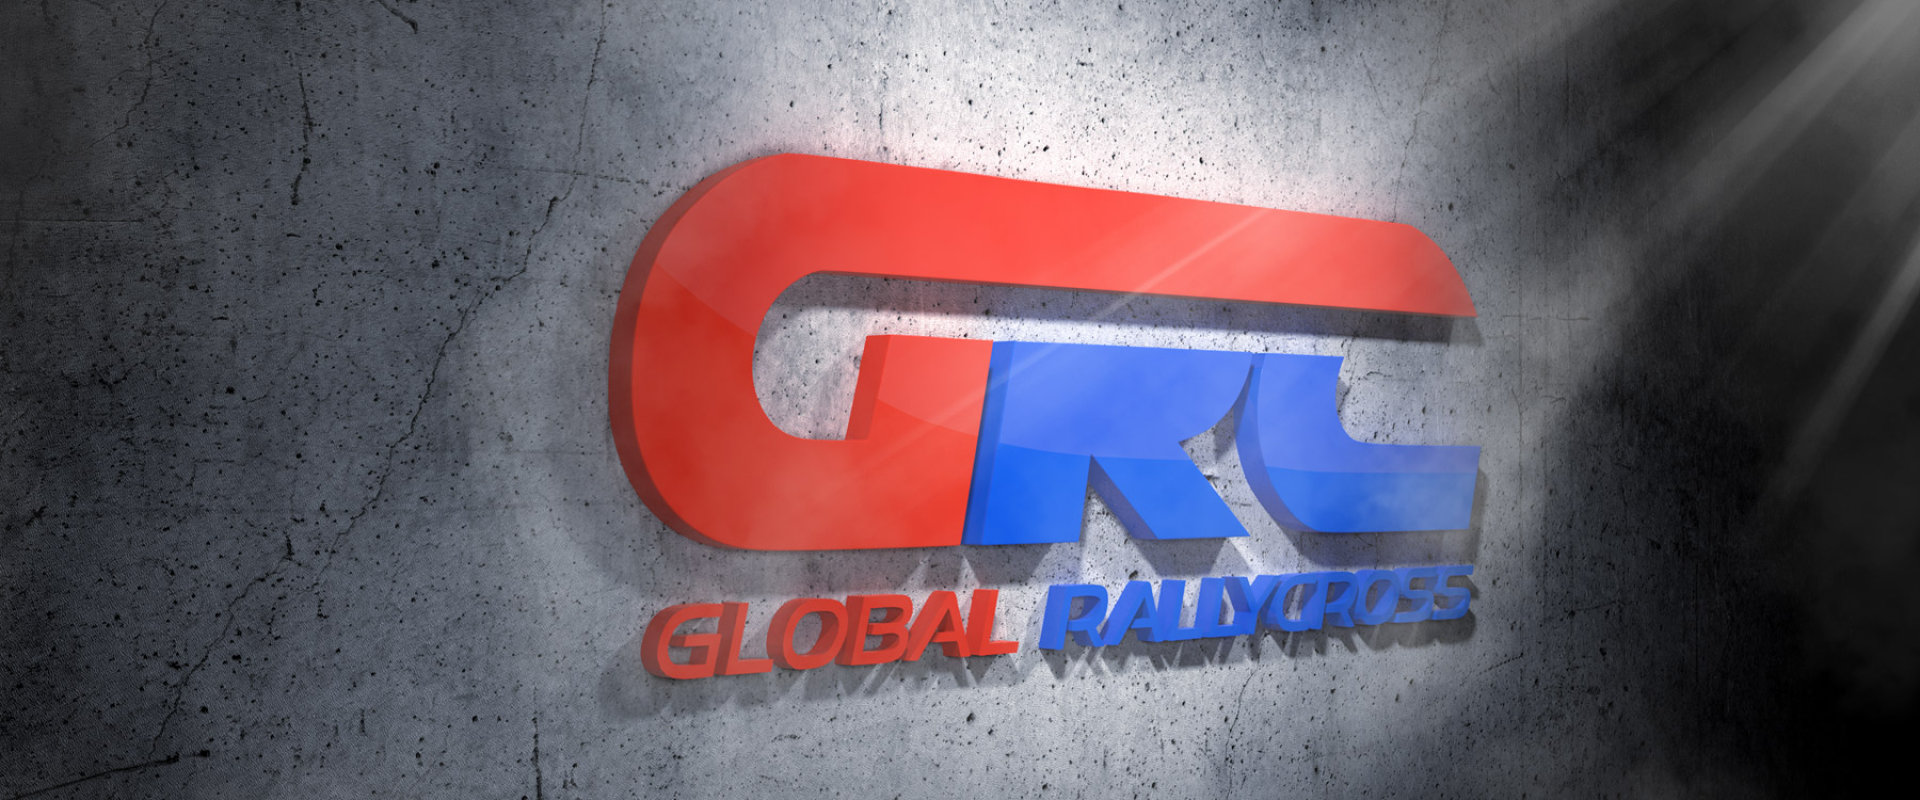 GRC Global Rallycross #2